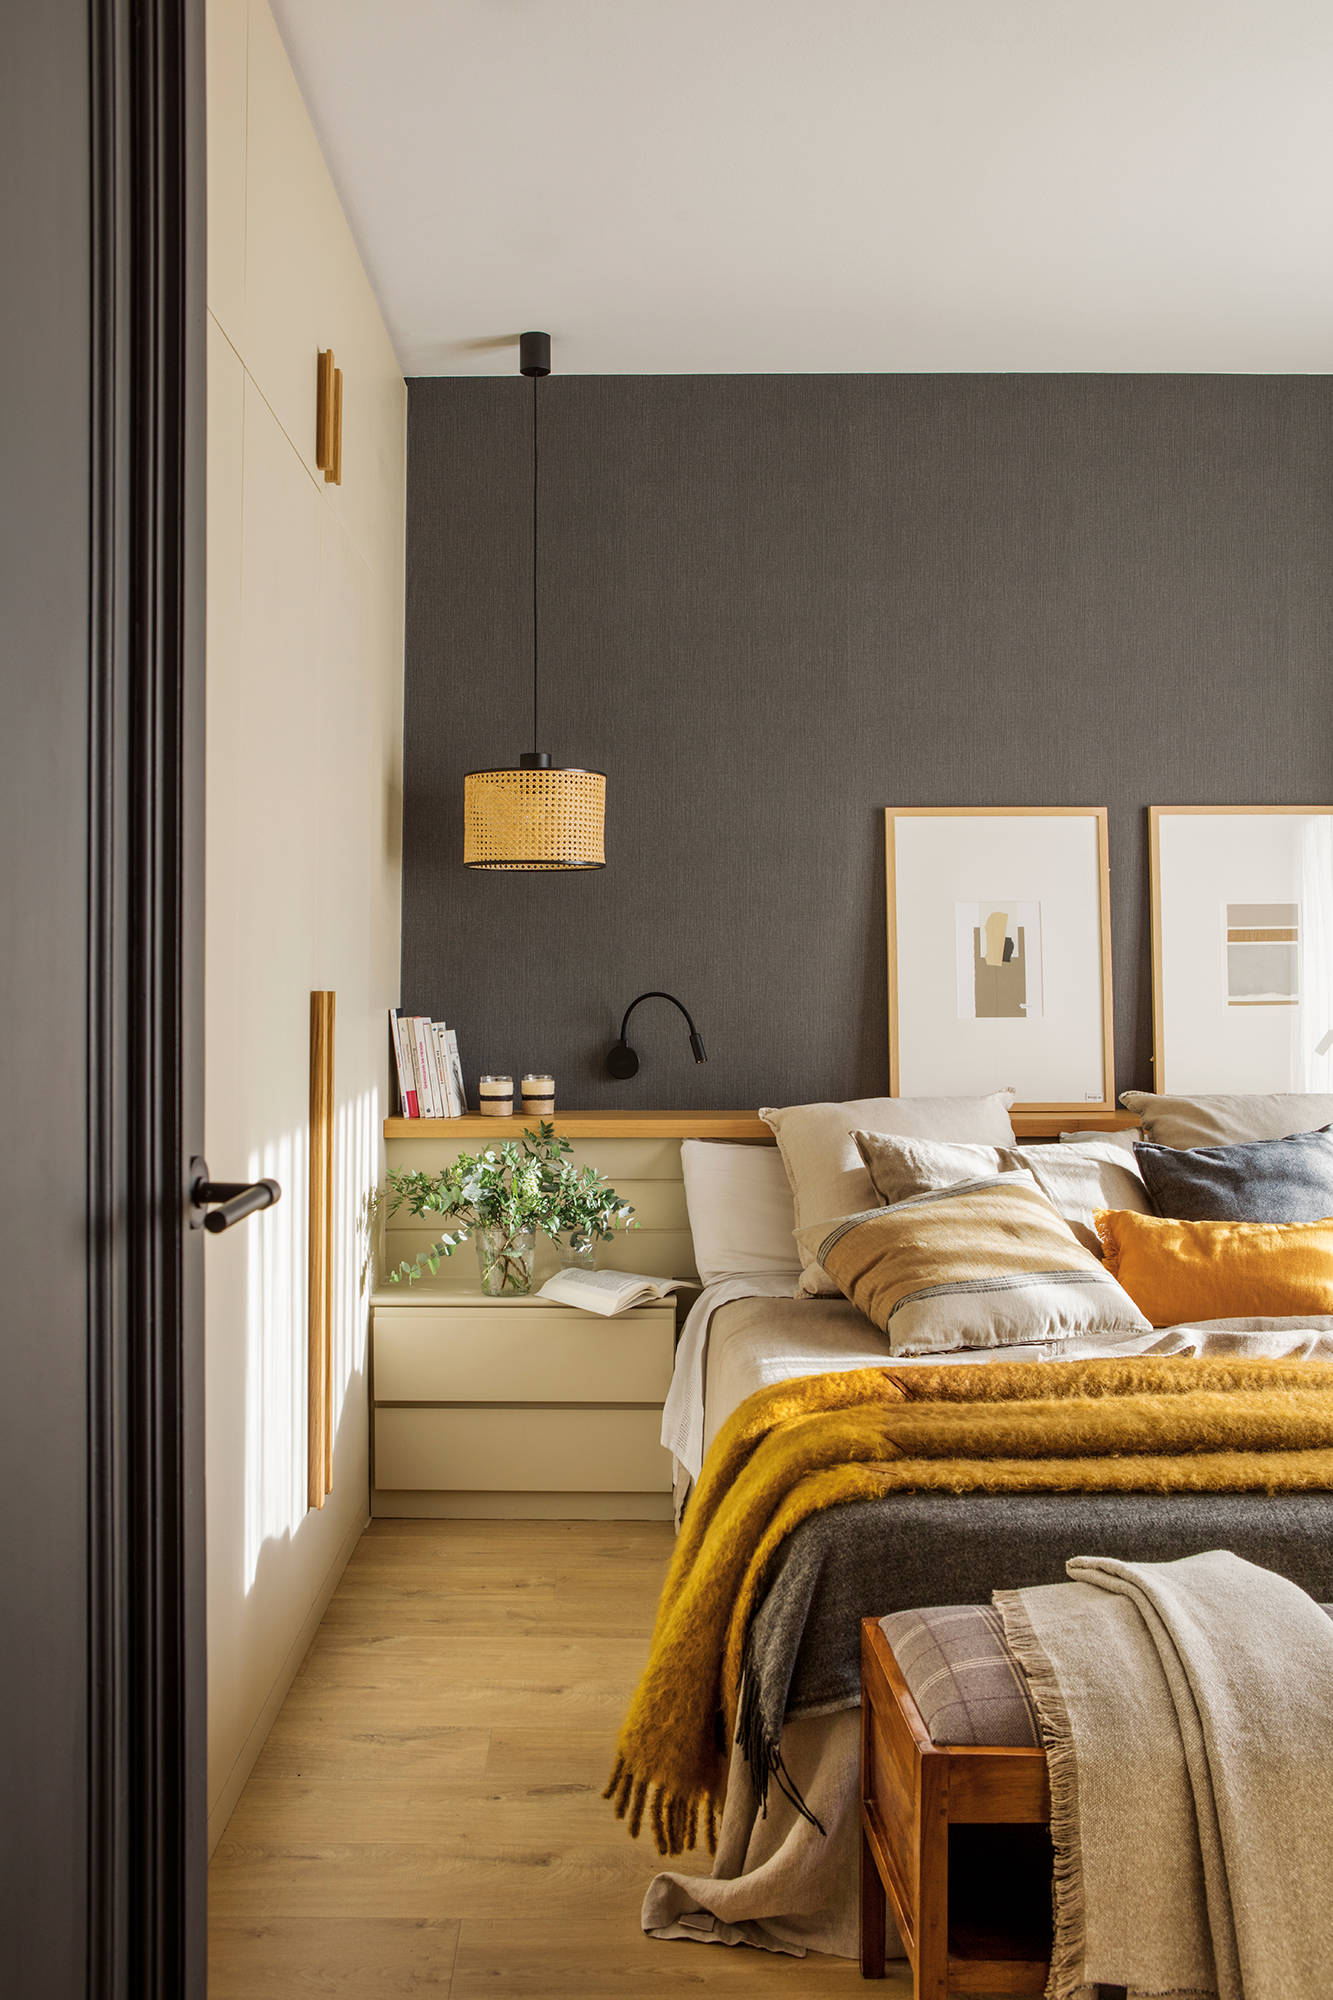 Dormitorio decorado en tonos grises, neutros y amarillos.